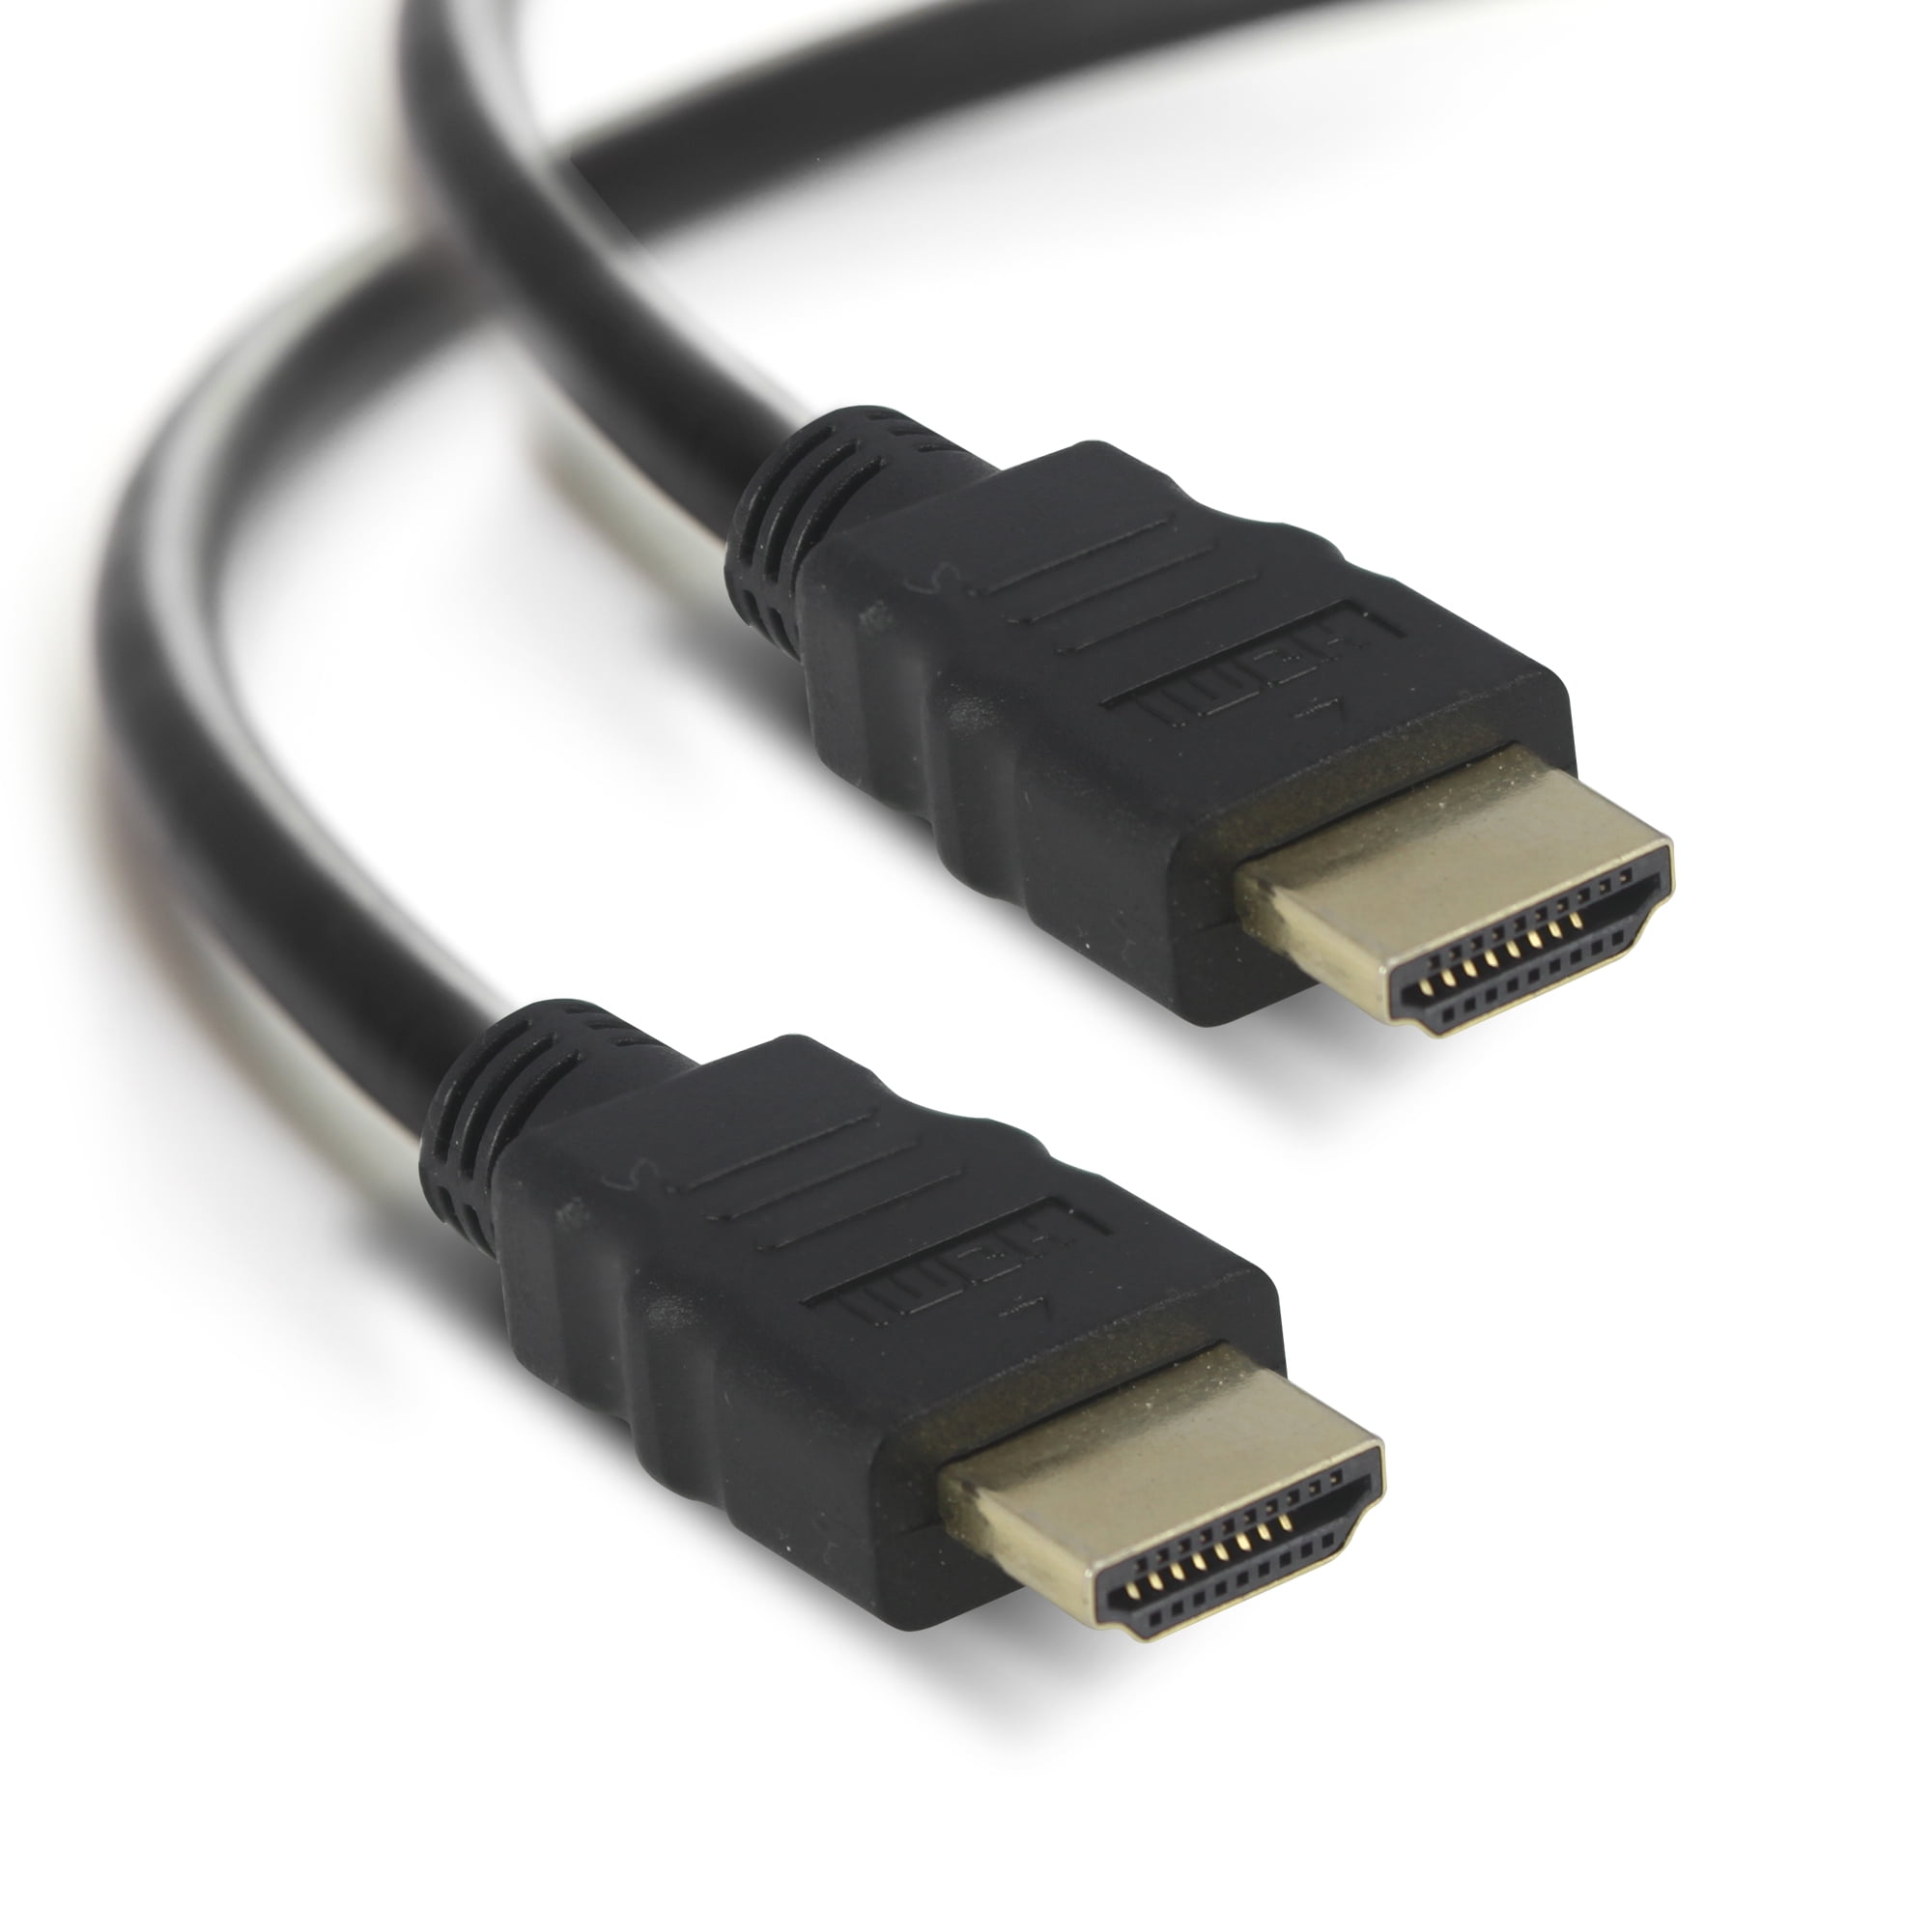 Cable HDMI Master 3.6 Metros MC-HDMI3.6